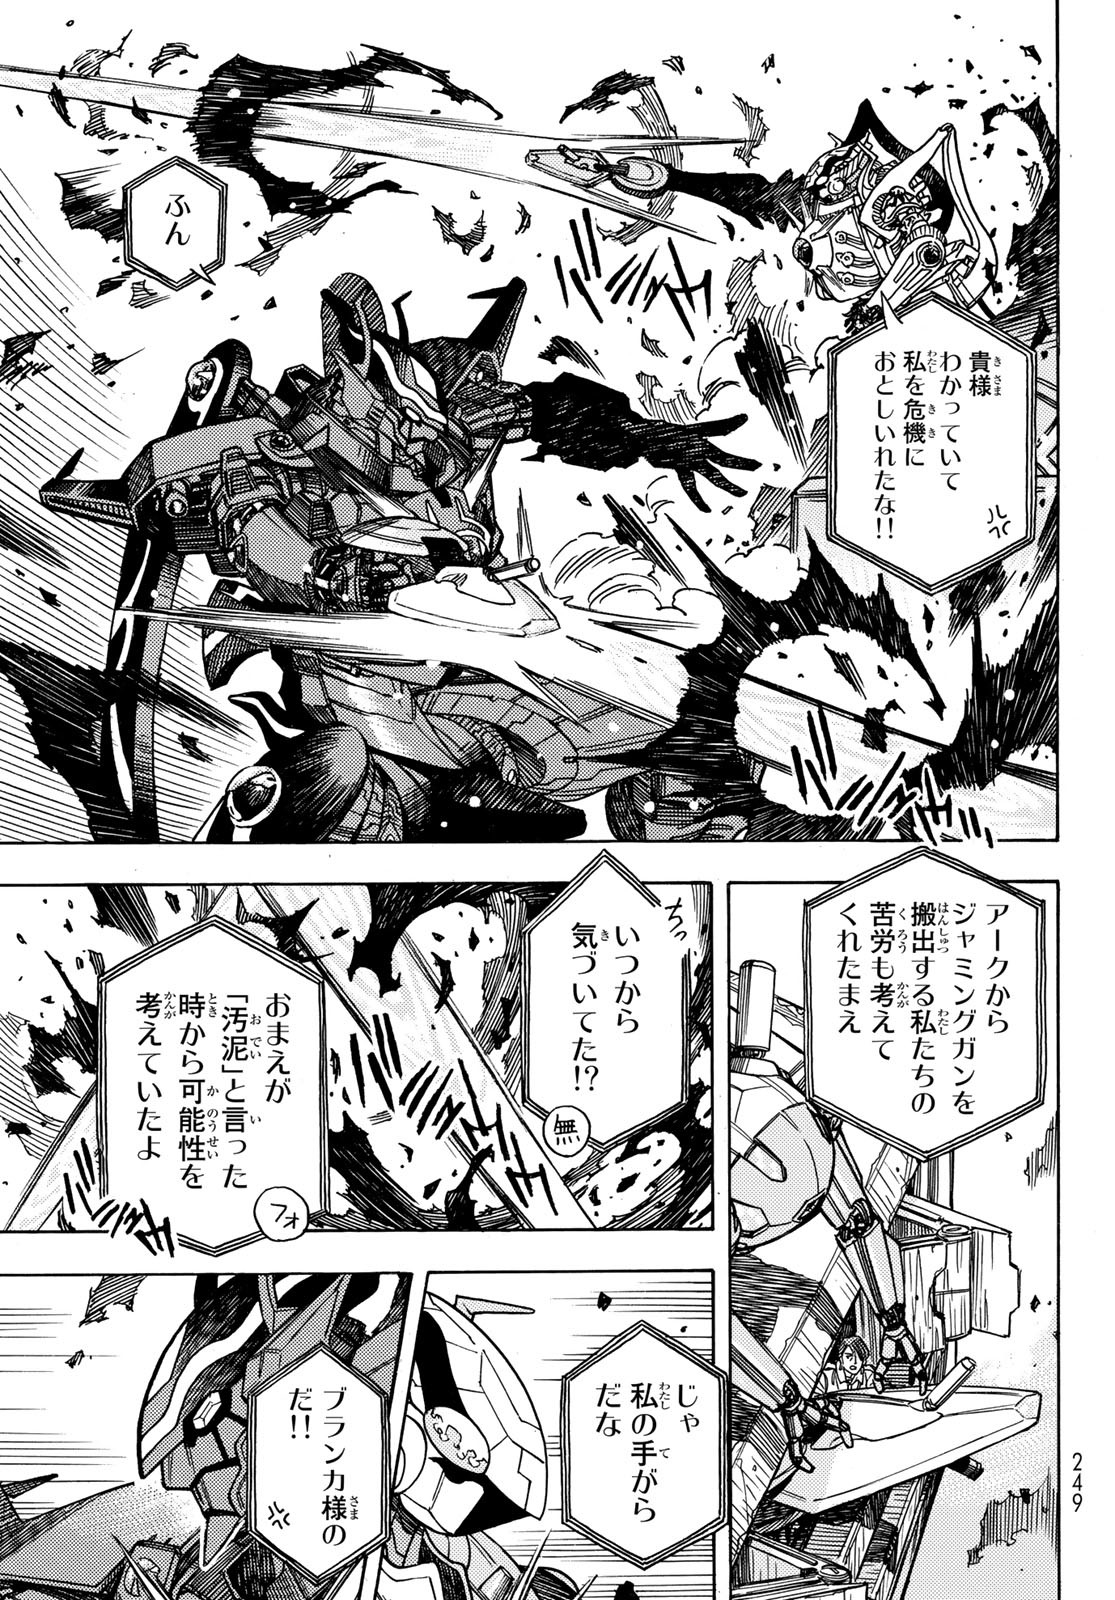 Mugou no Schnell Gear: Chikyuugai Kisouka AI - Chapter 46 - Page 15